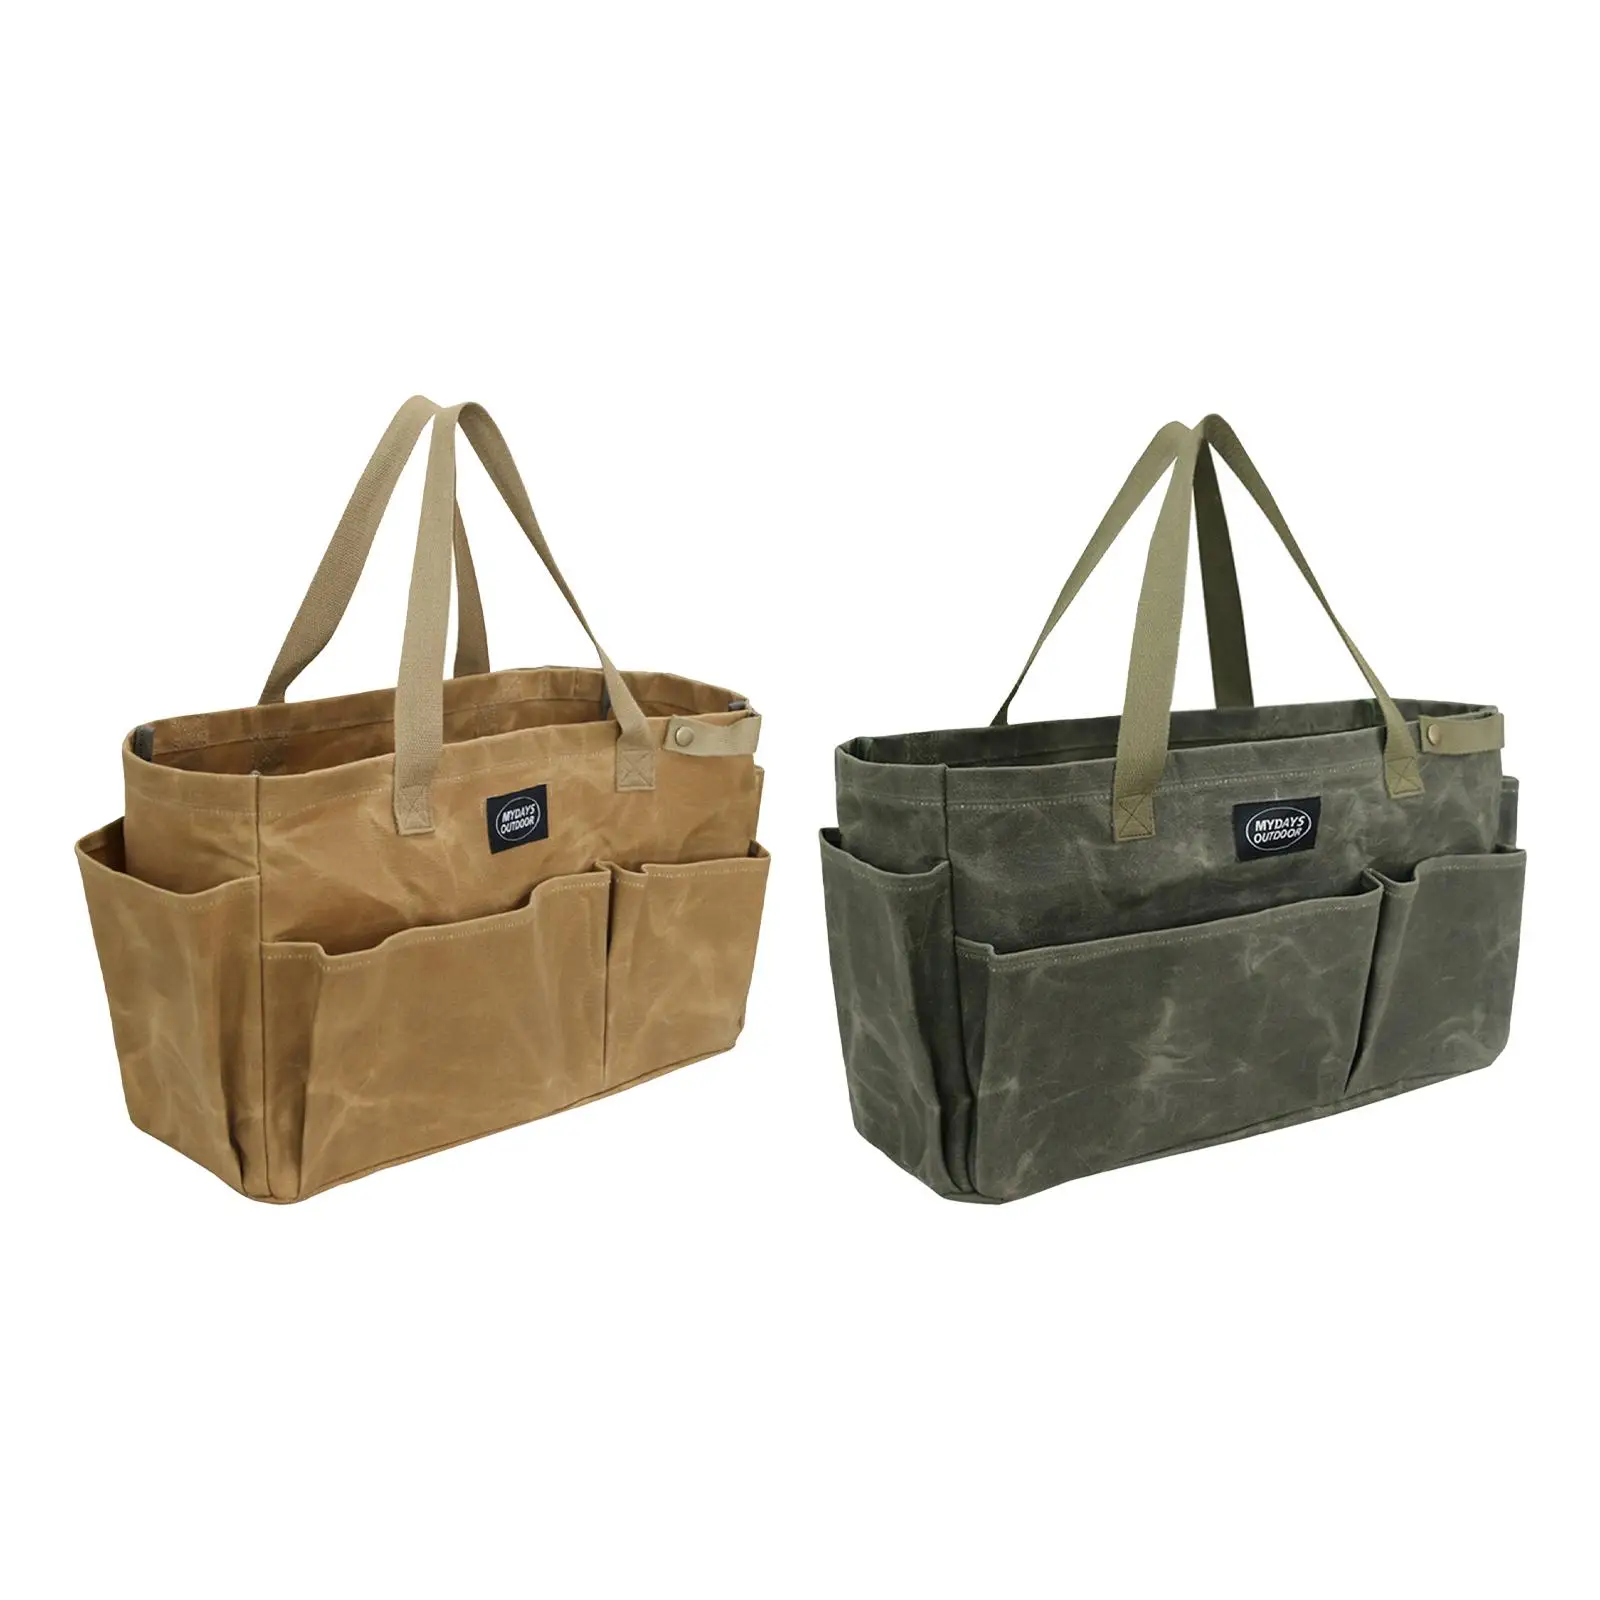 Camping Storage Bag Travel Basket Durable Handbag Stuff Carrier Wear-resistant